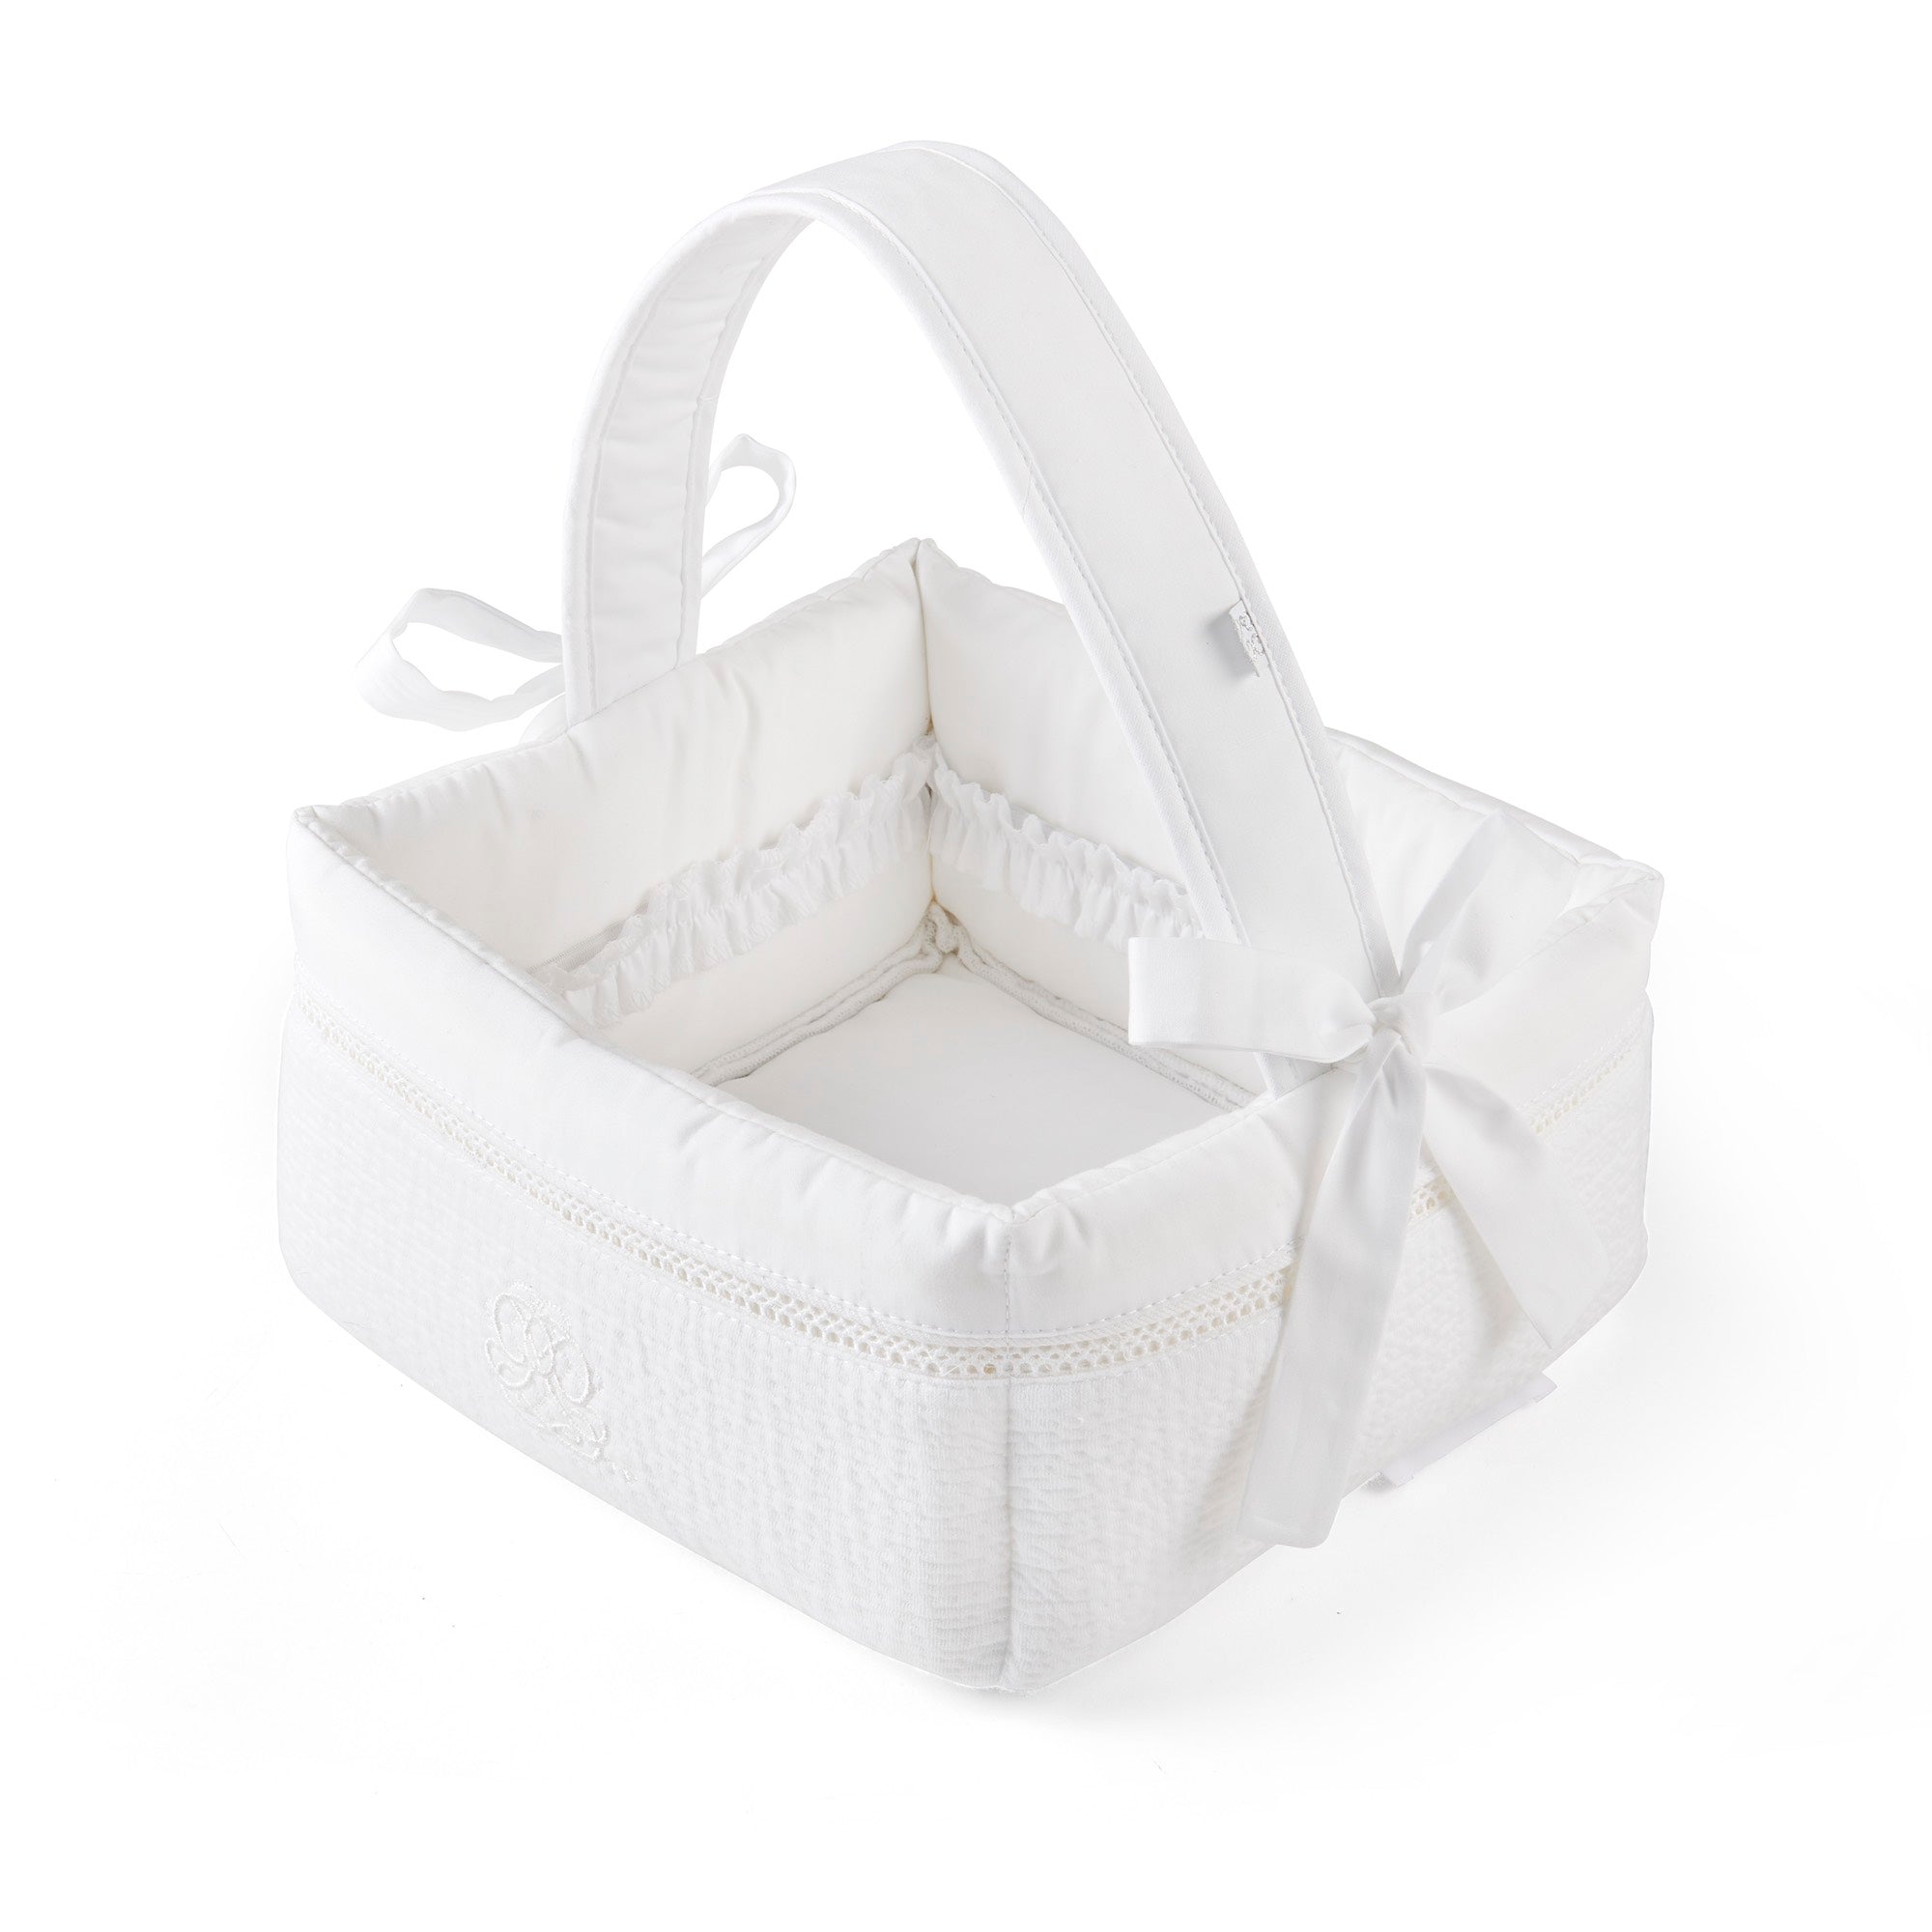 Theophile & Patachou Baby Toilet Basket - Cotton White